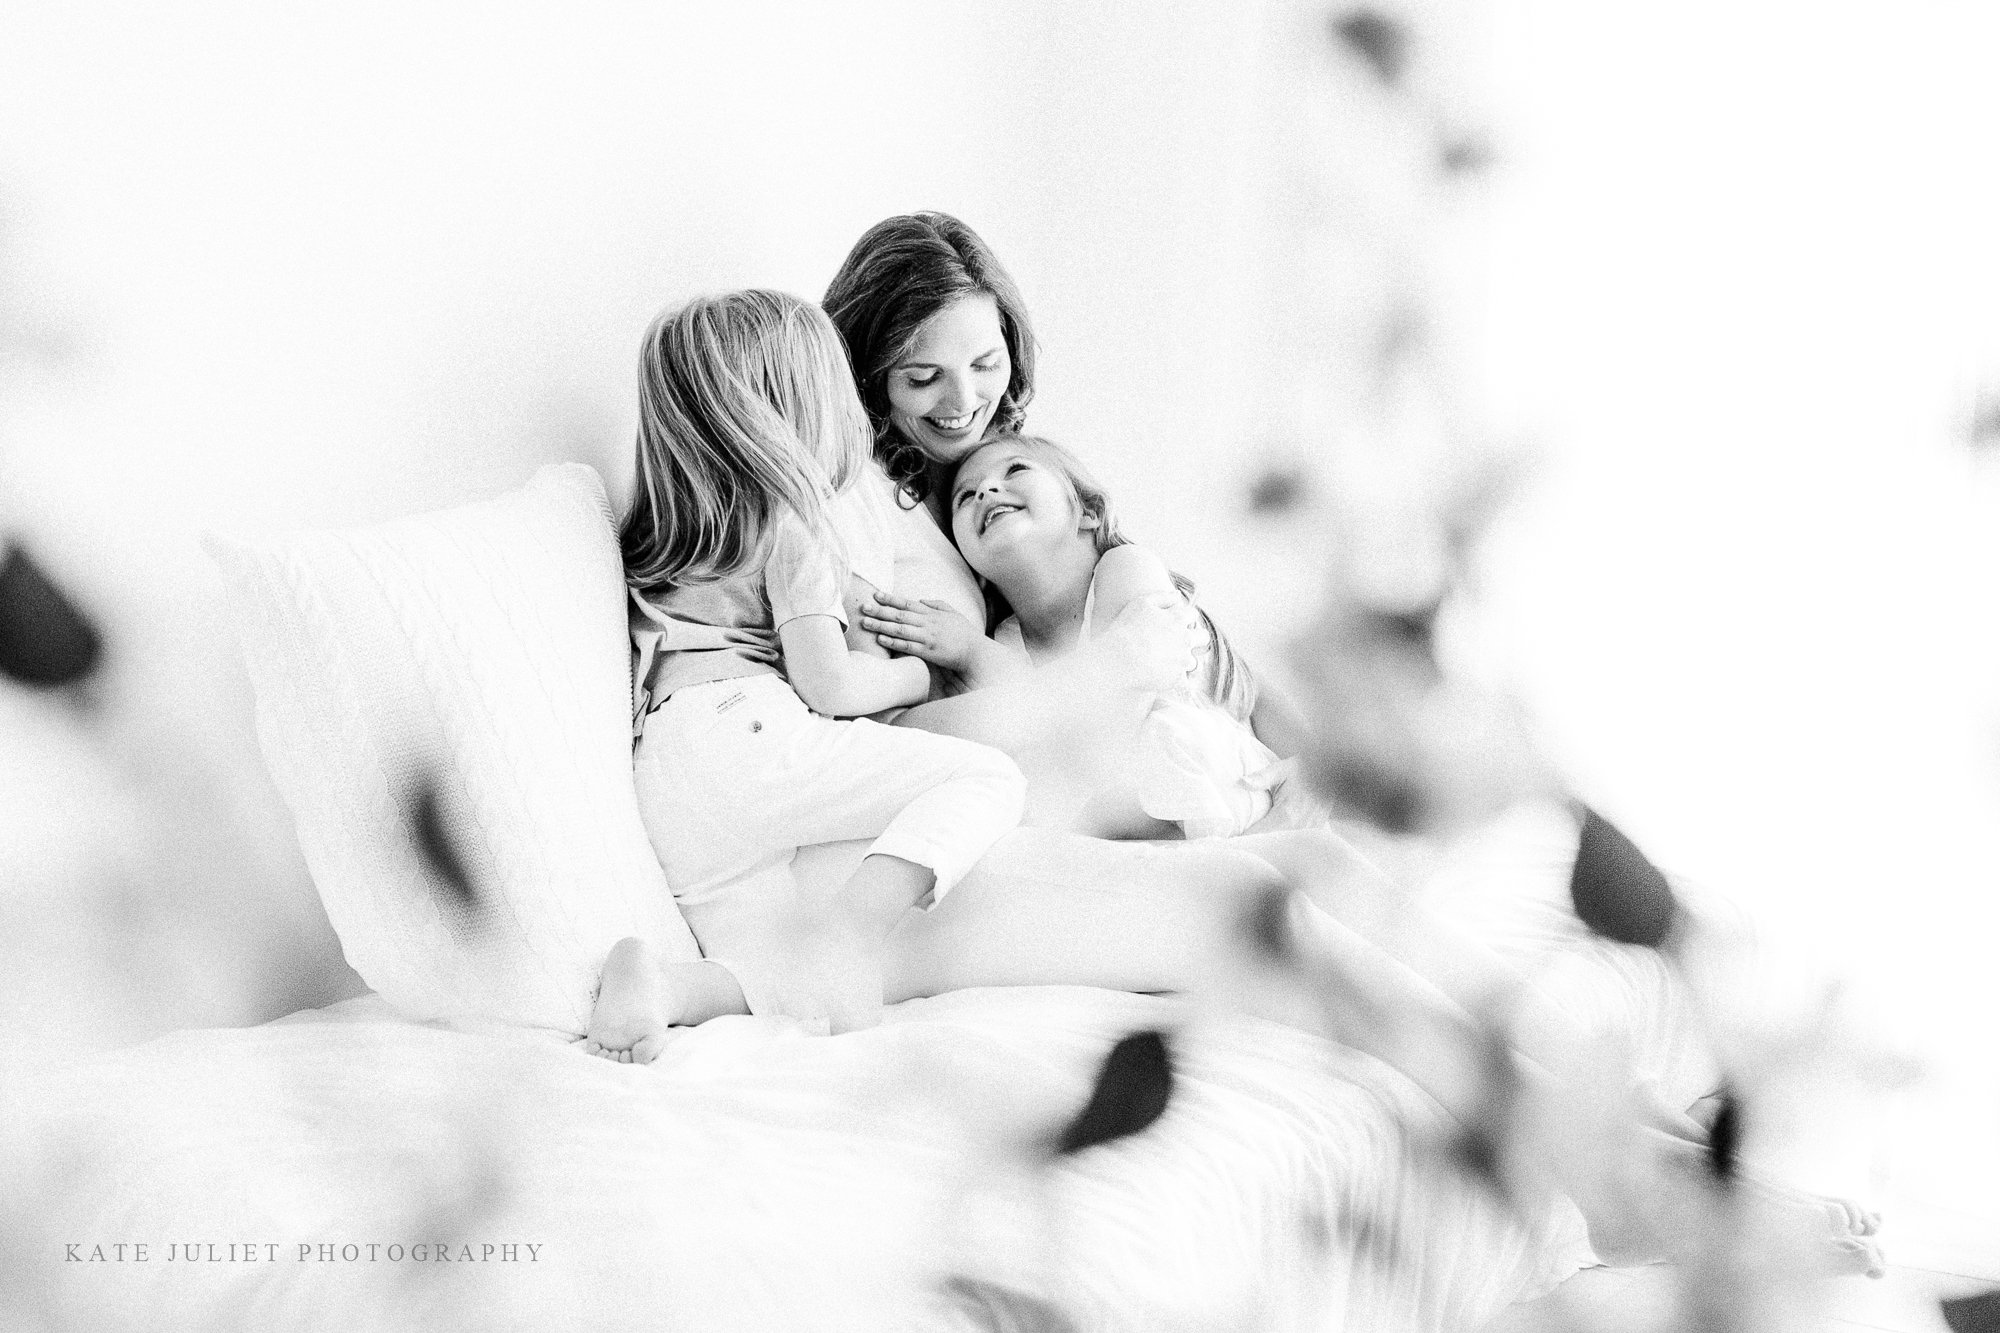 kate-juliet-photography-2022-motherhood-event-web-32 (1).jpg